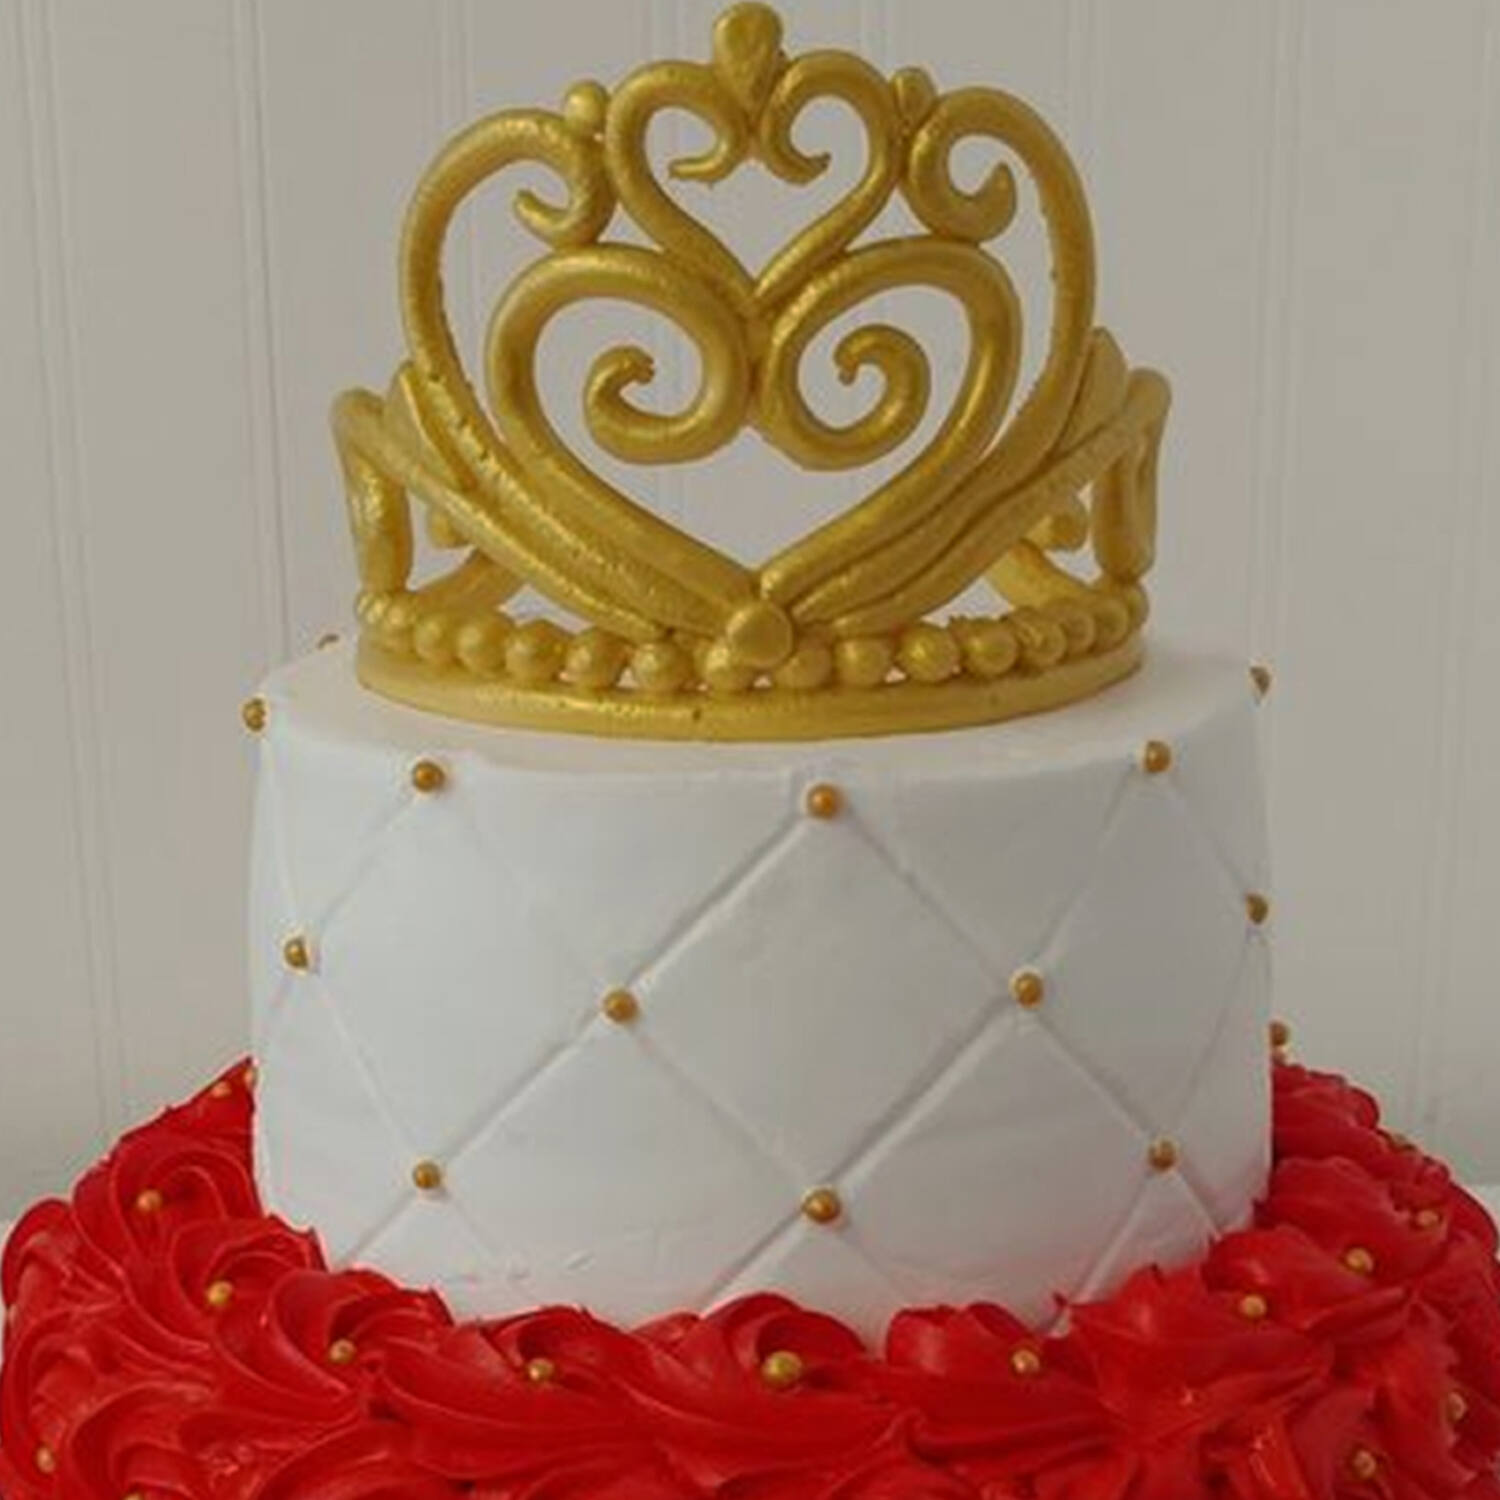 King Crown Birthday Cake premium cake design 6 kg butterscotch